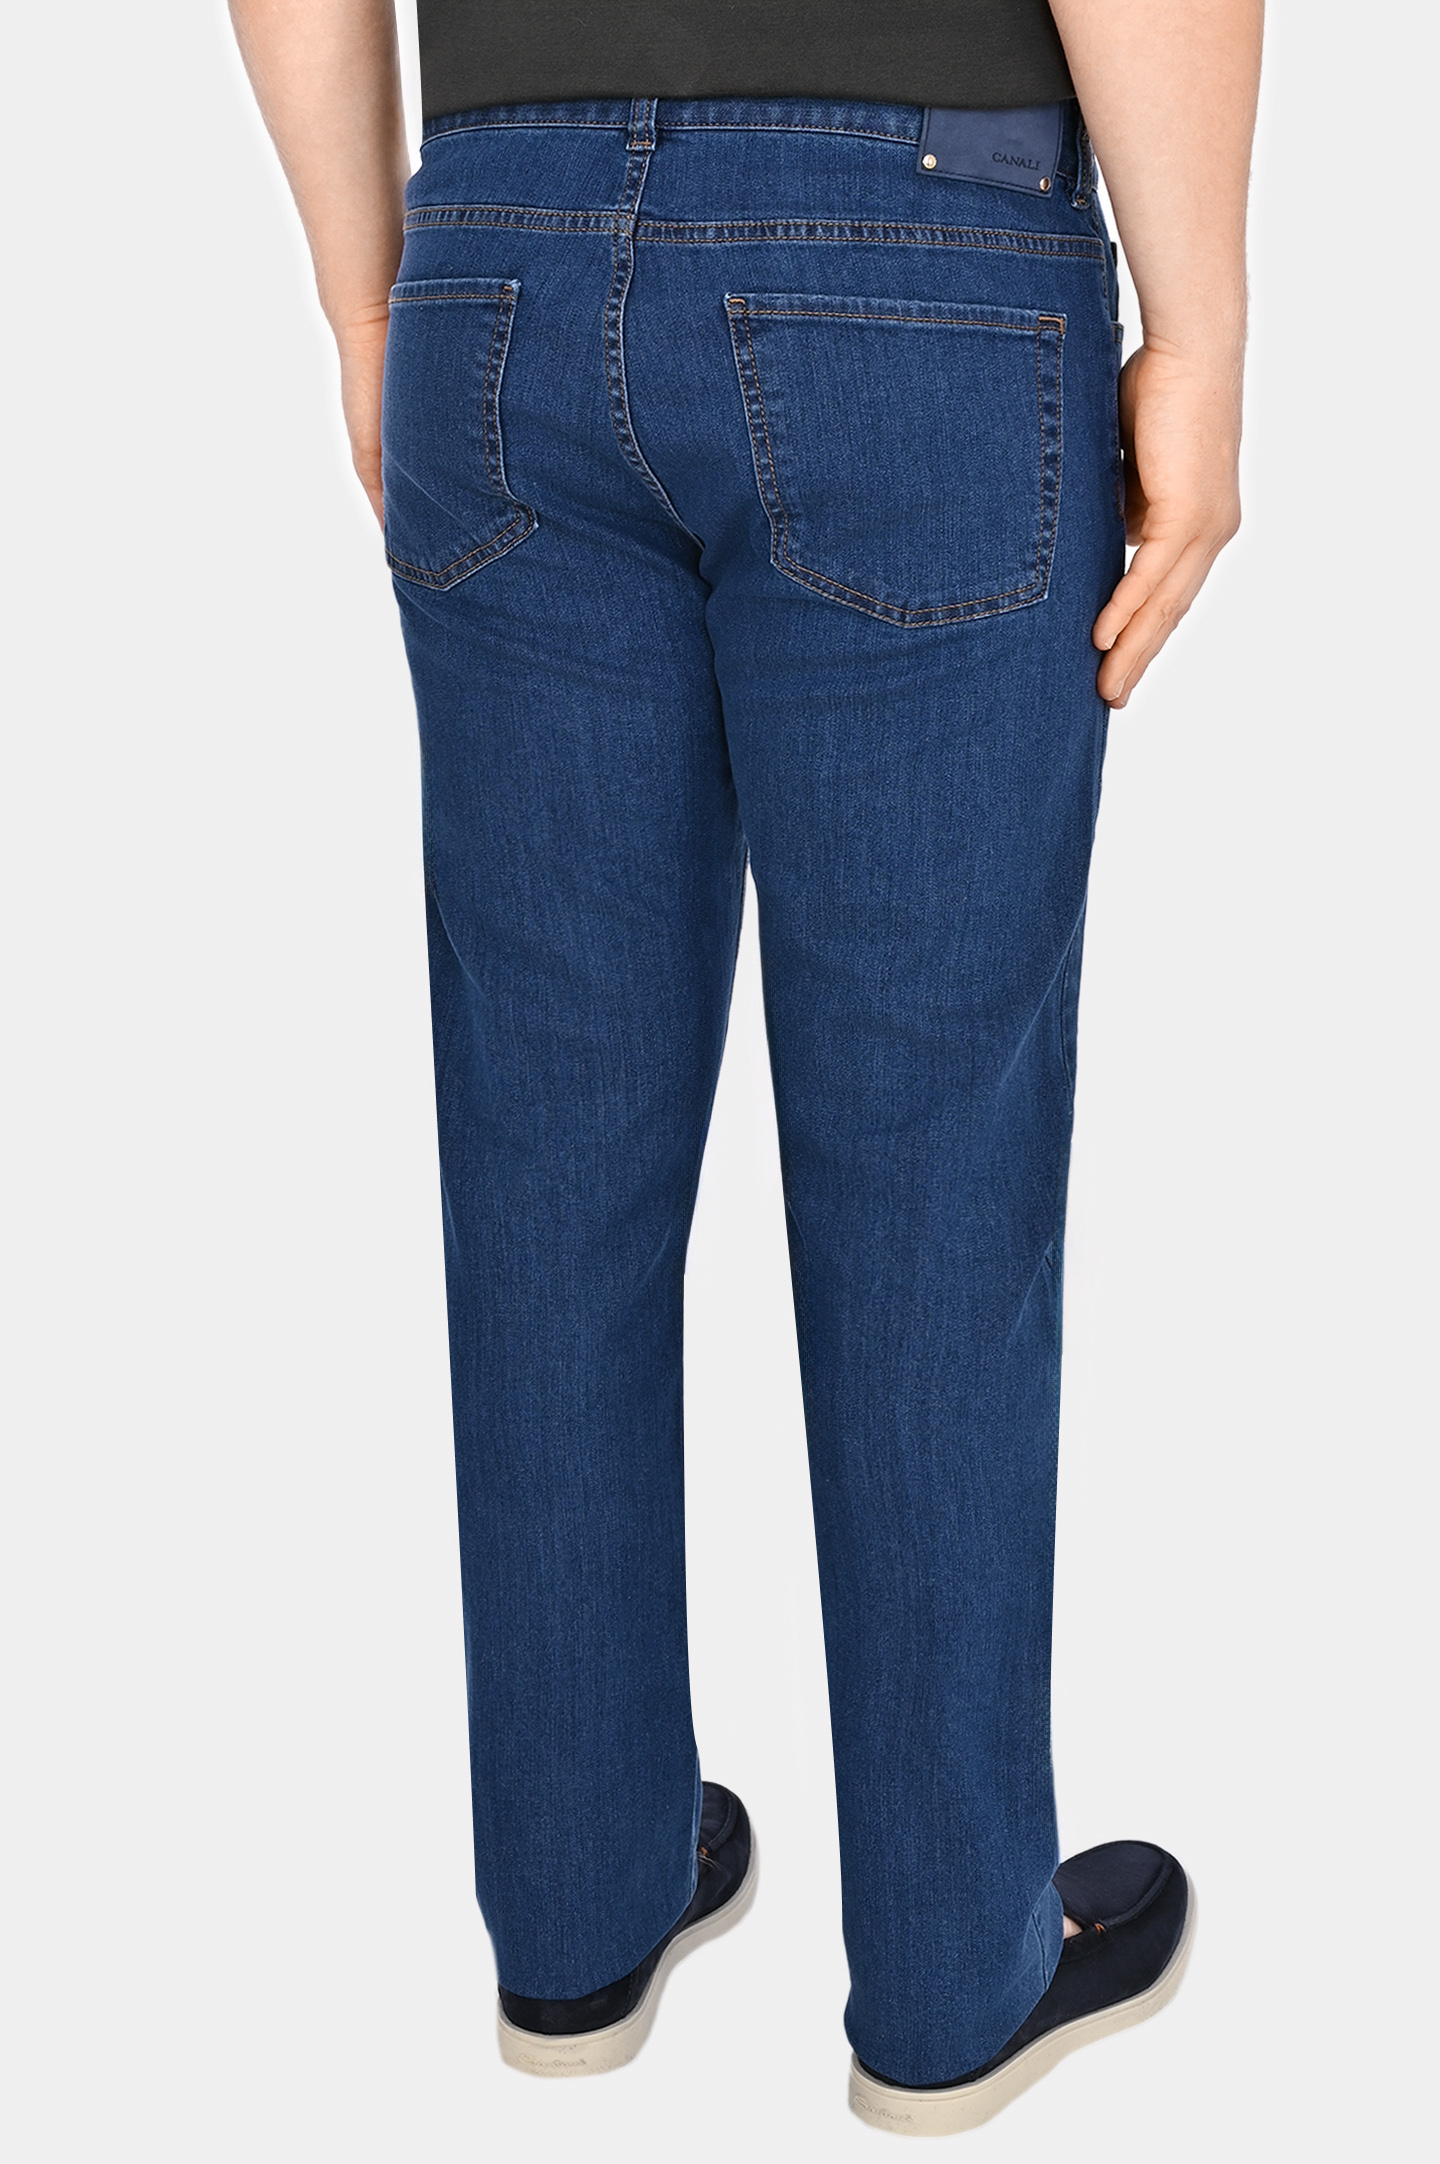 Прямые базовые джинсы CANALI PD00018 91700I, цвет: Синий, Мужской